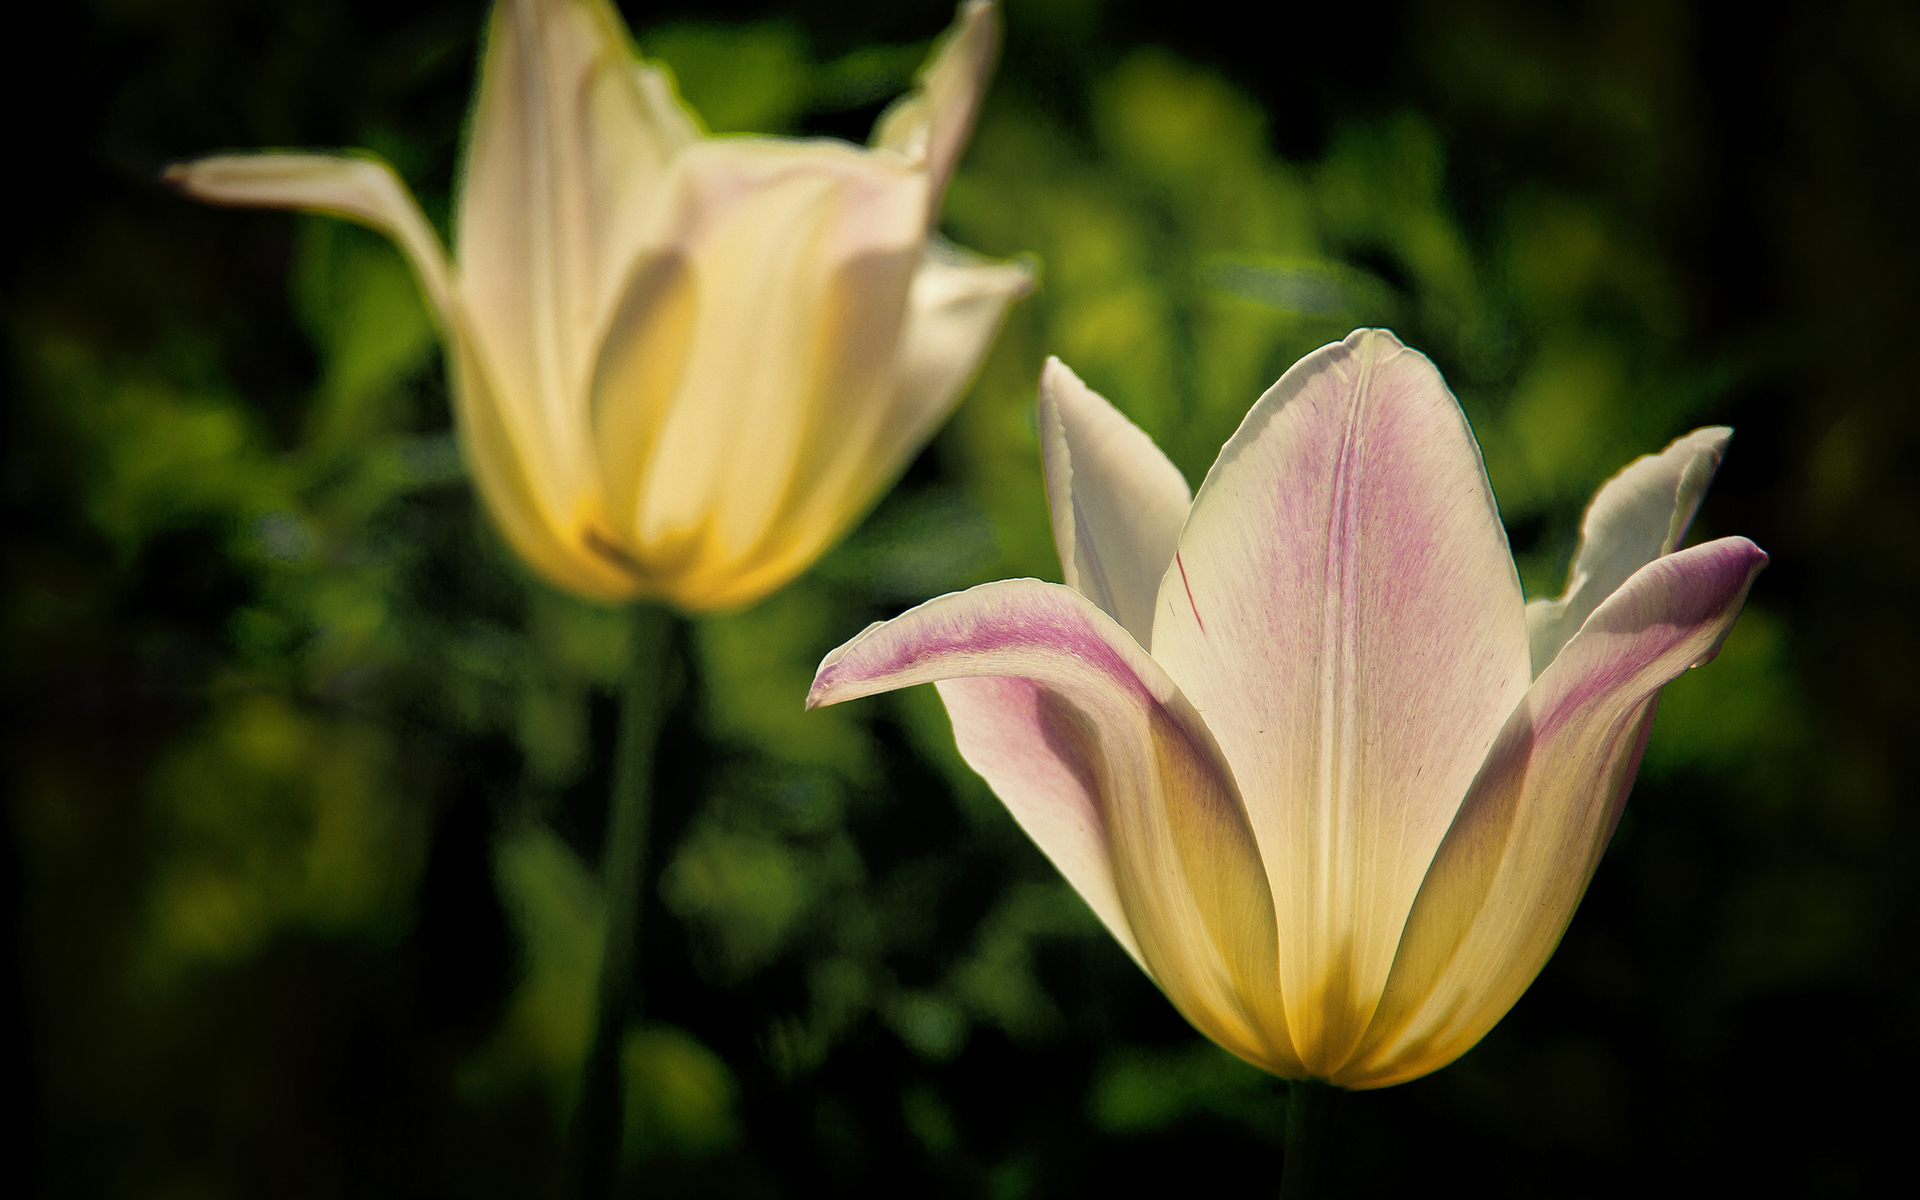 Descarga gratuita de fondo de pantalla para móvil de Tulipán, Flores, Flor, Tierra/naturaleza.